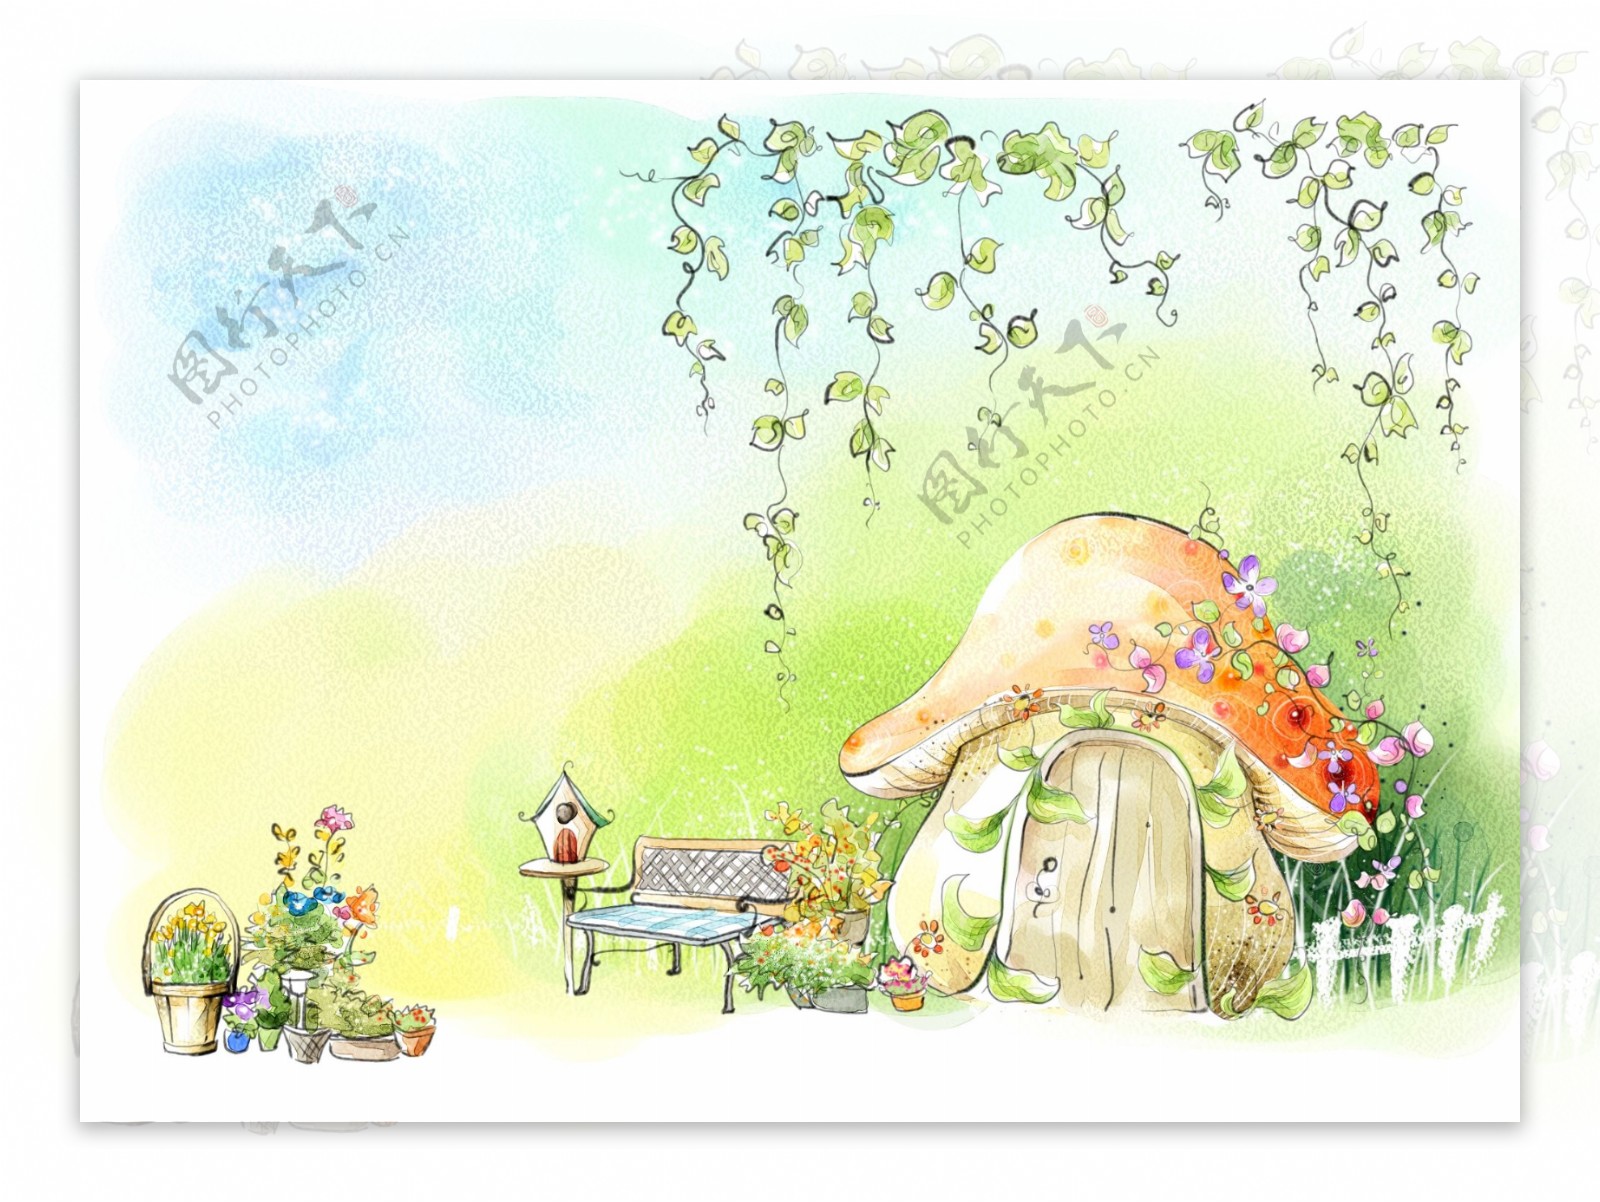 蘑菇小屋童话风景插画